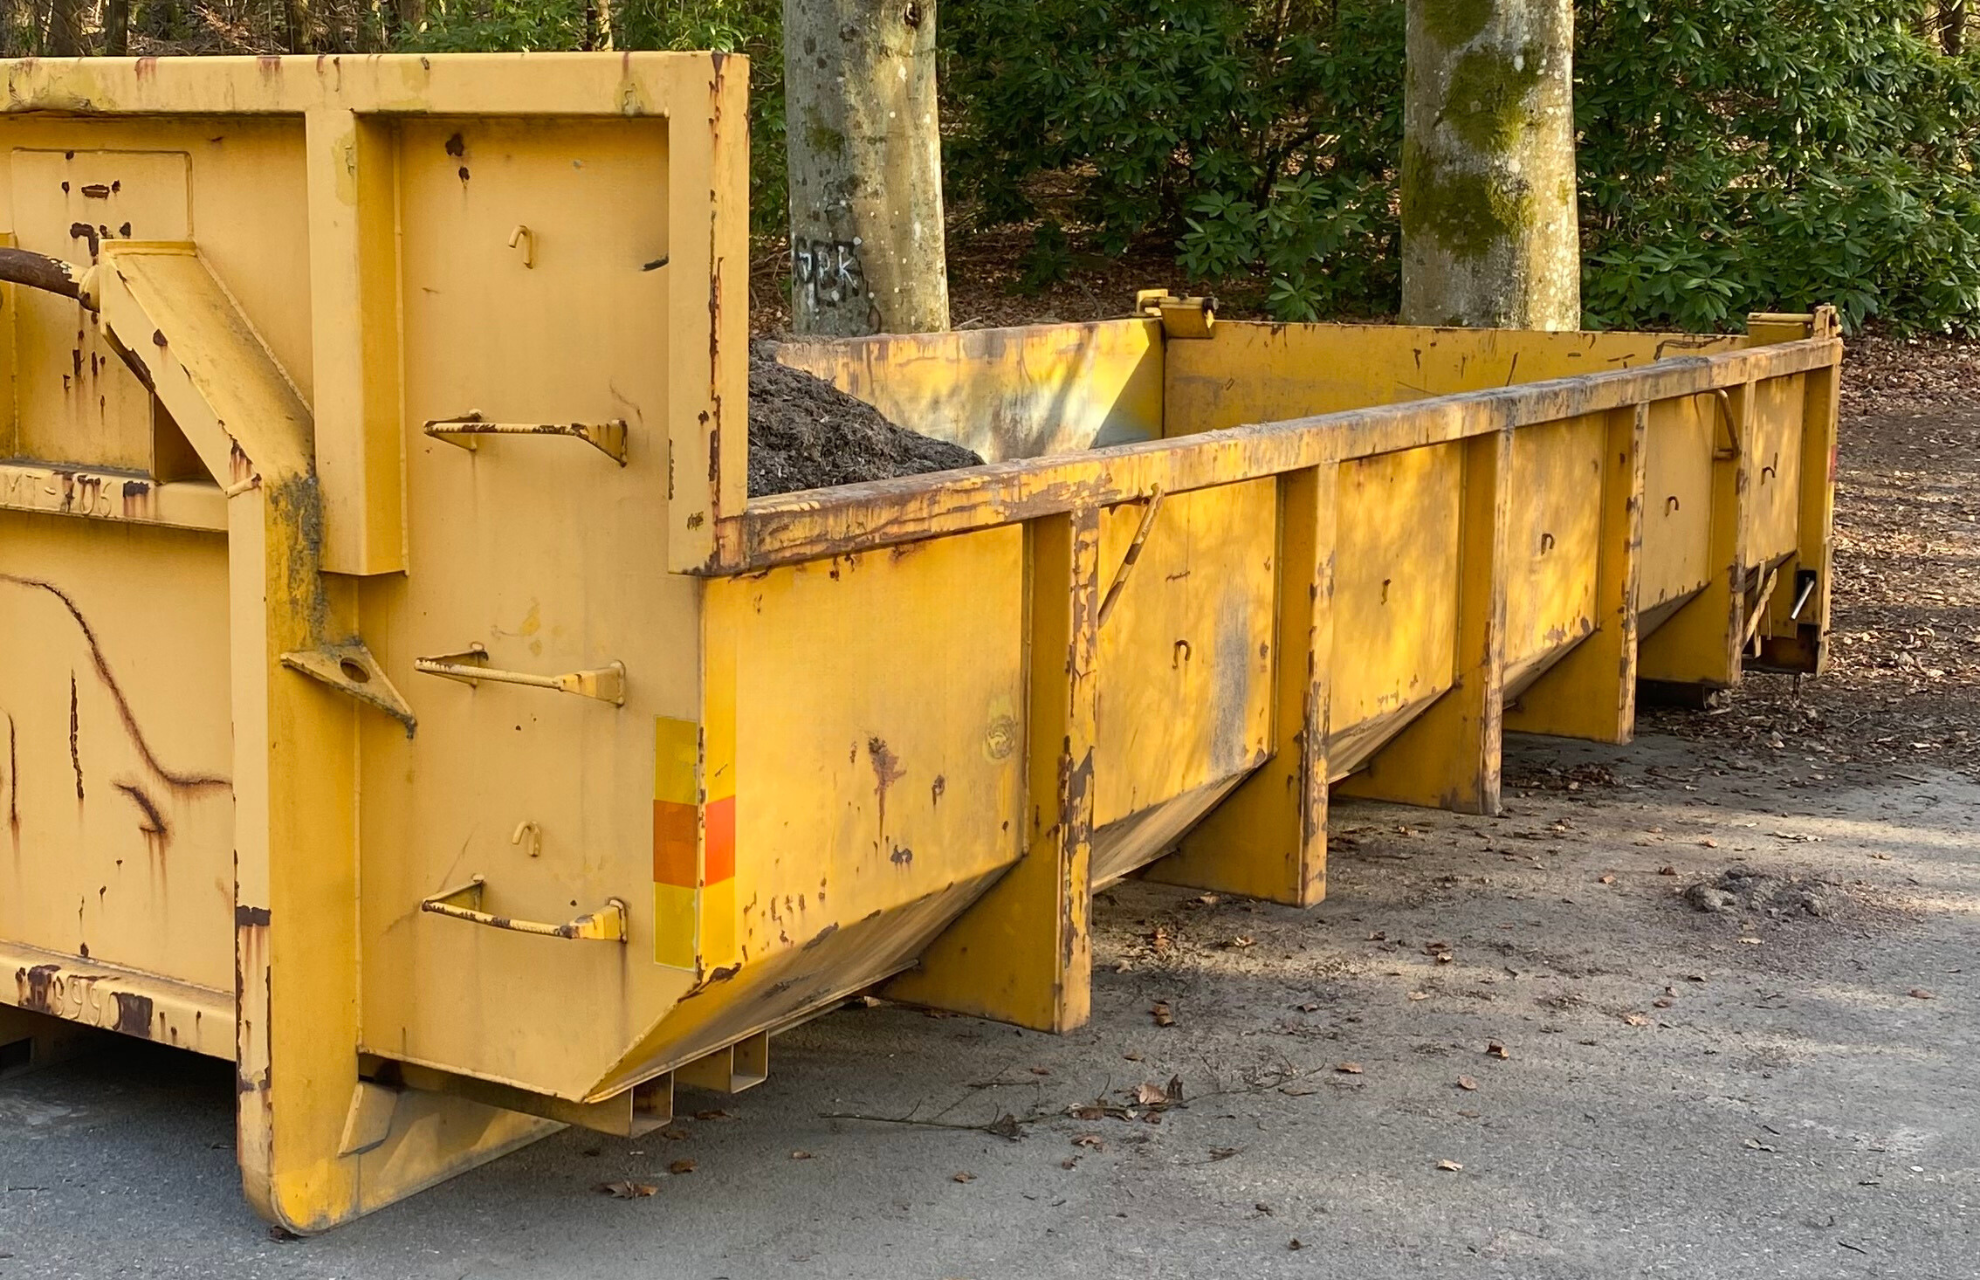 Avfallsutrustning, bild på gul container